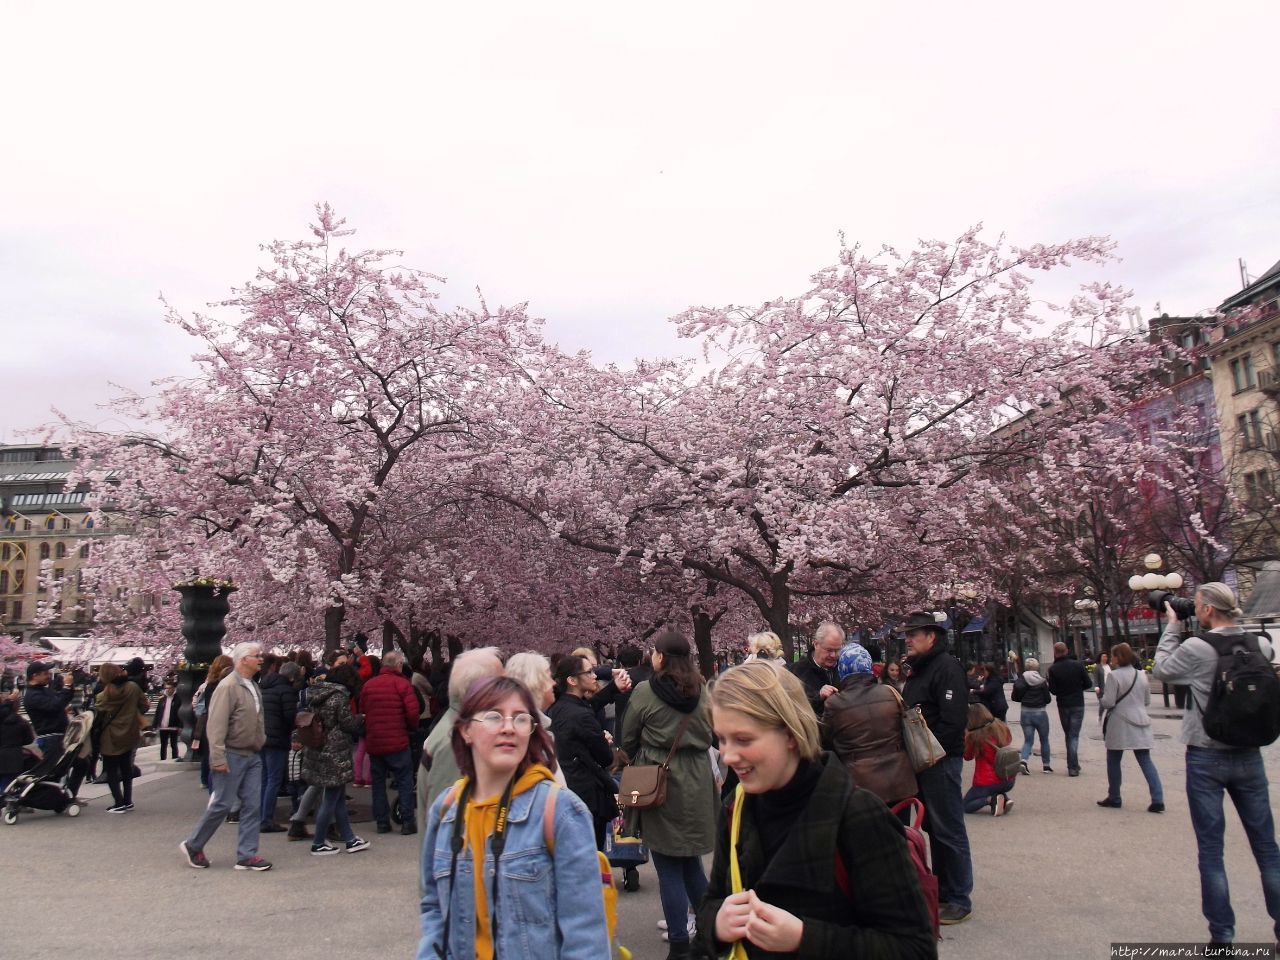 Цветение сакуры в Скандинавской Венеции — так поэтически именуют Стокгольм — надо видеть! Стокгольм, Швеция